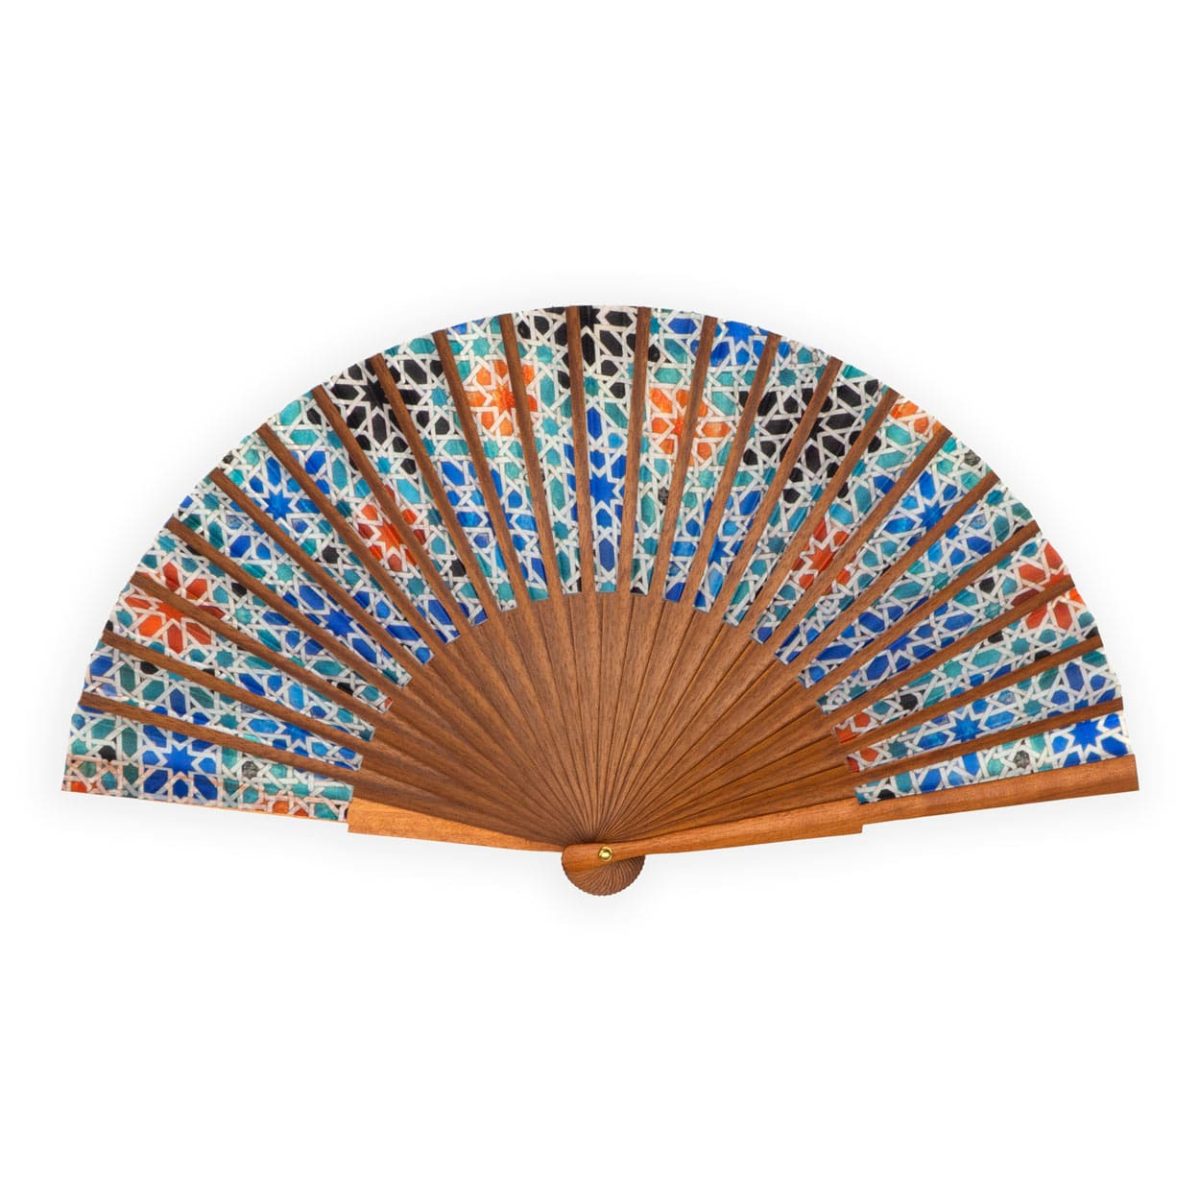 Islamic art inspired multicolor silk fan